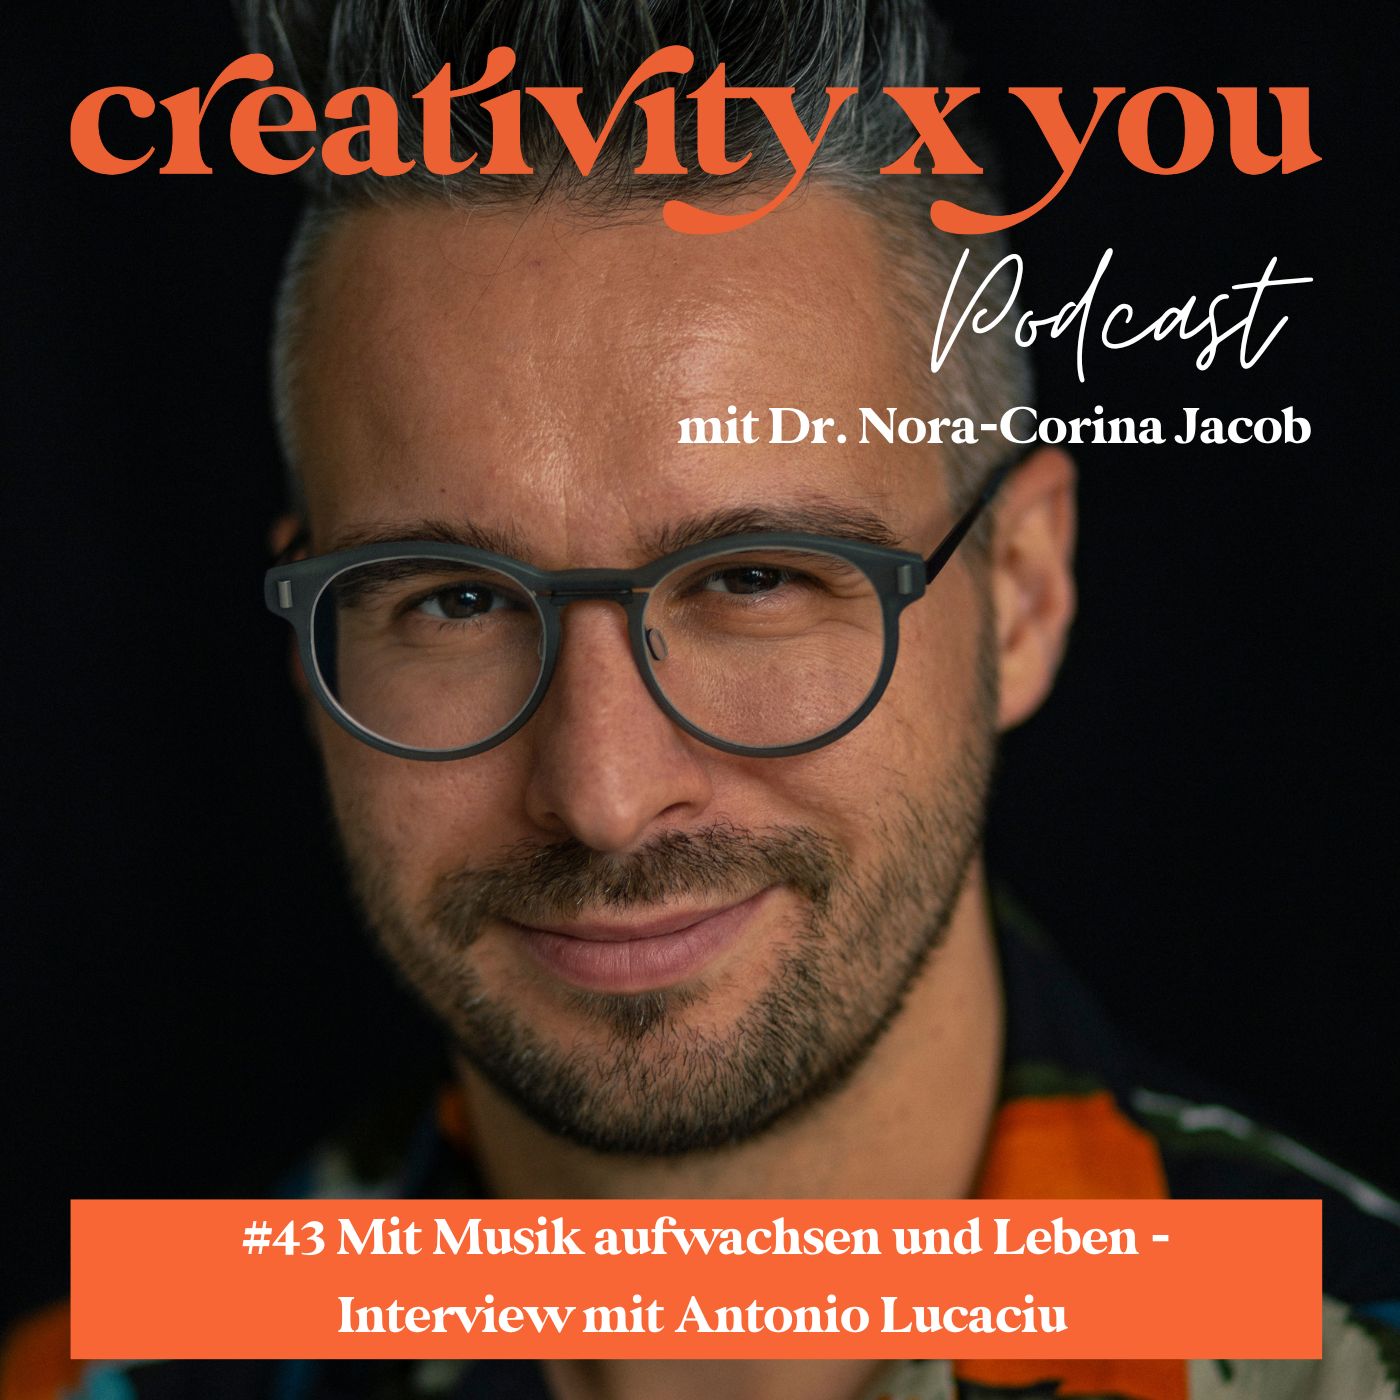 #43 Mit Musik aufwachsen und leben, wie hat dich das geprägt? - Interview mit Antonio Lucaciu